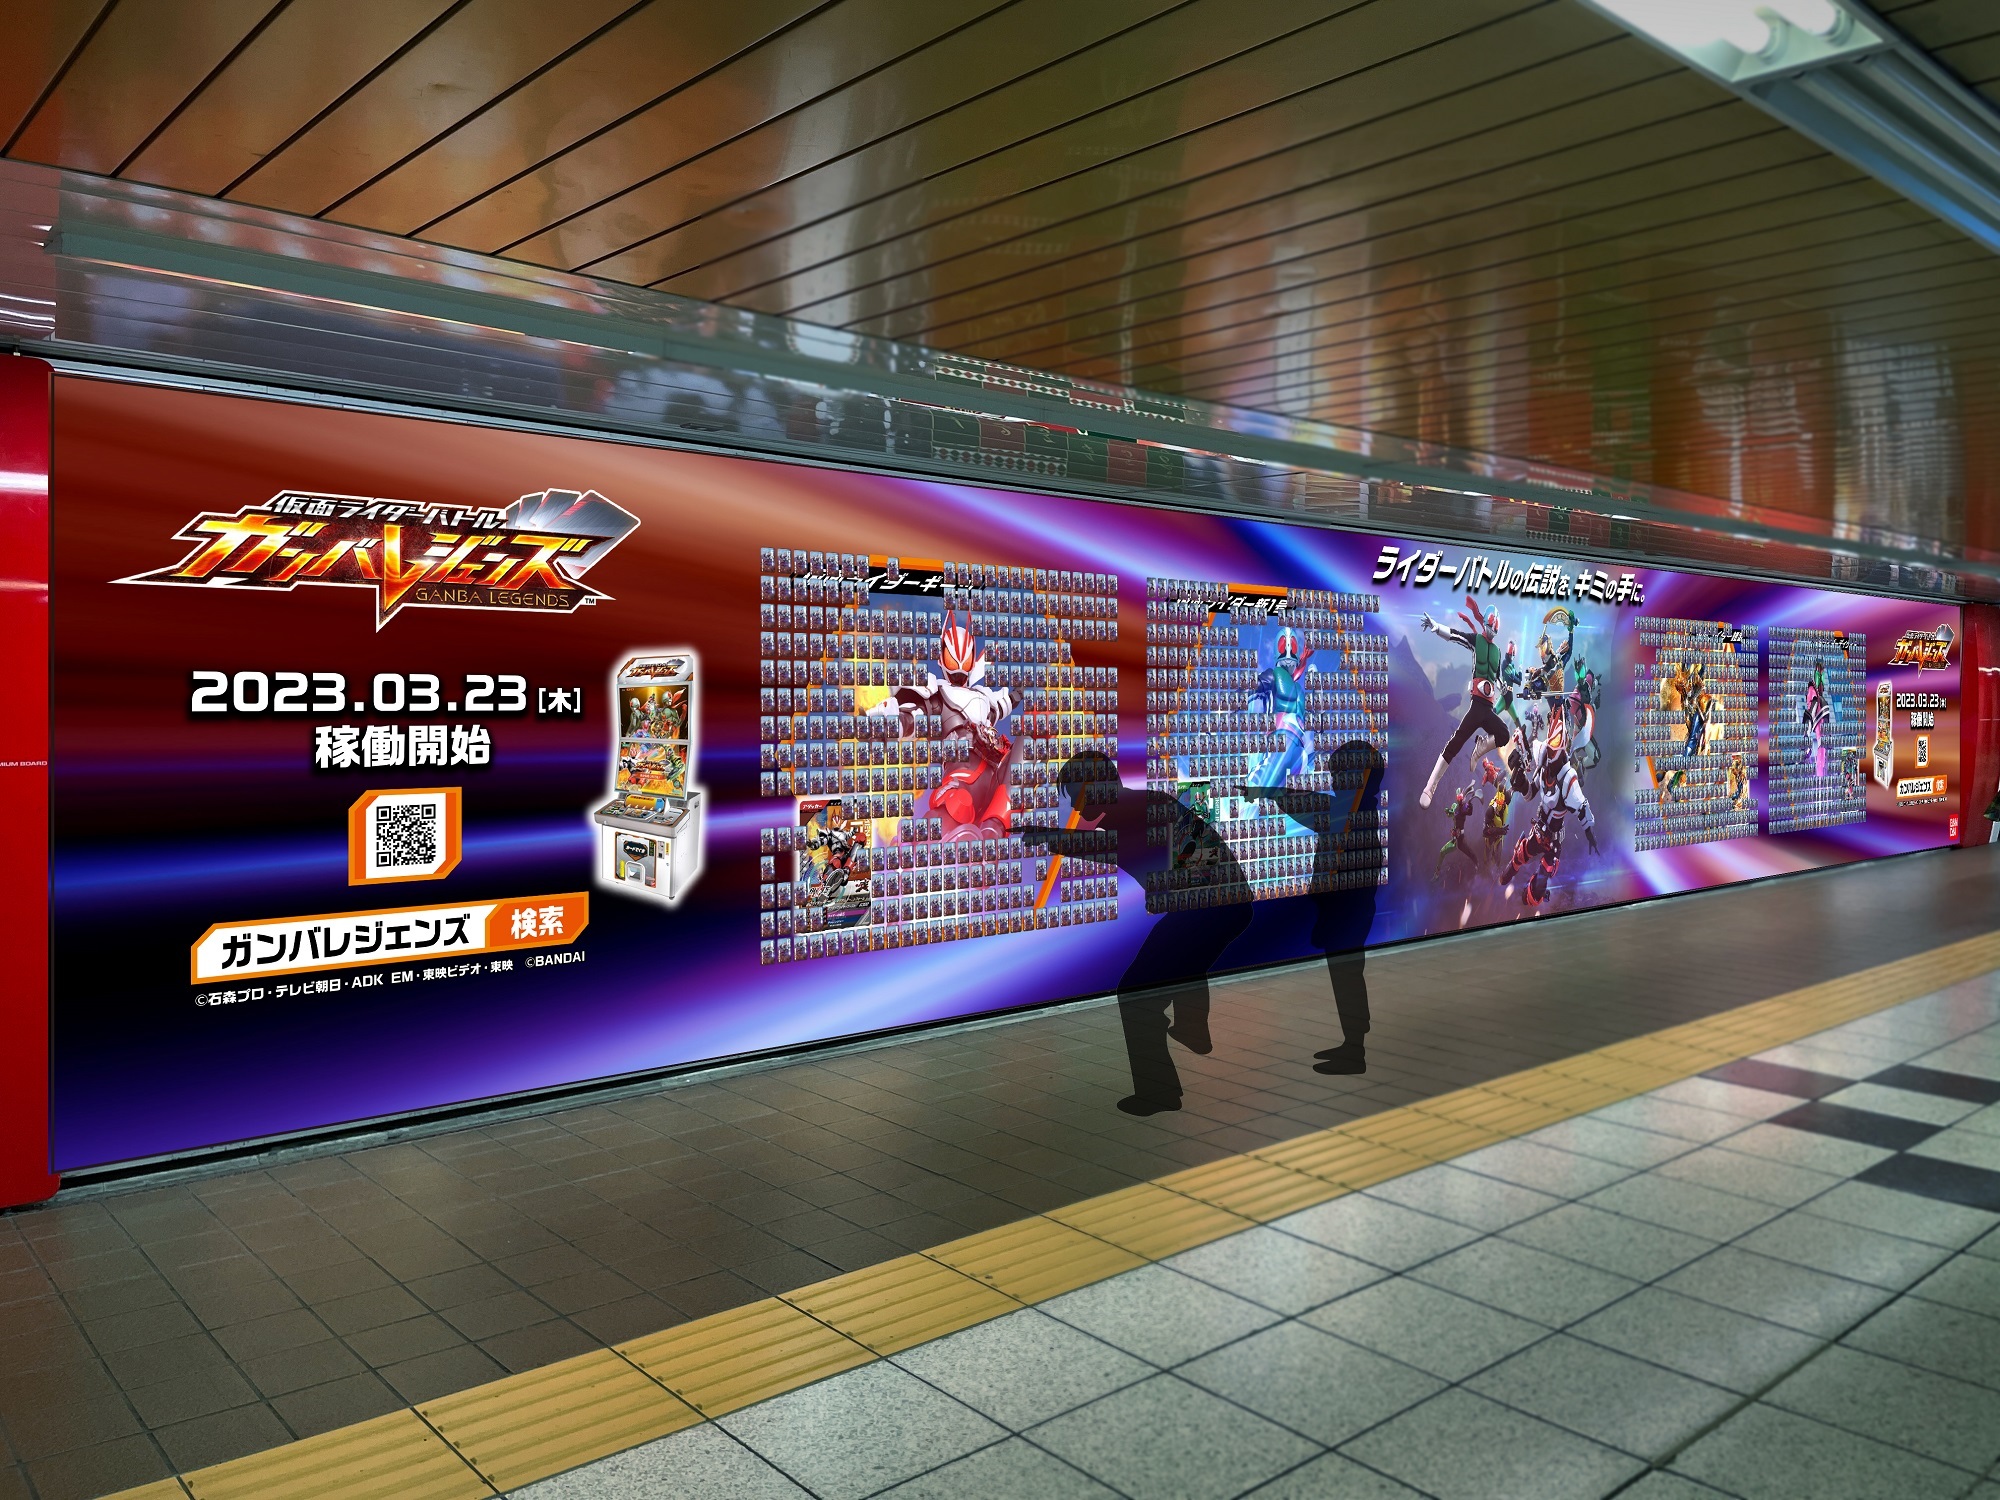 3月23日より稼働開始！
デジタルキッズカードゲーム「仮面ライダーバトル ガンバレジェンズ」
仮面ライダー新1号、ディケイド、鎧武、ギーツ 
4人の名言入りカードが新宿駅に大量出現